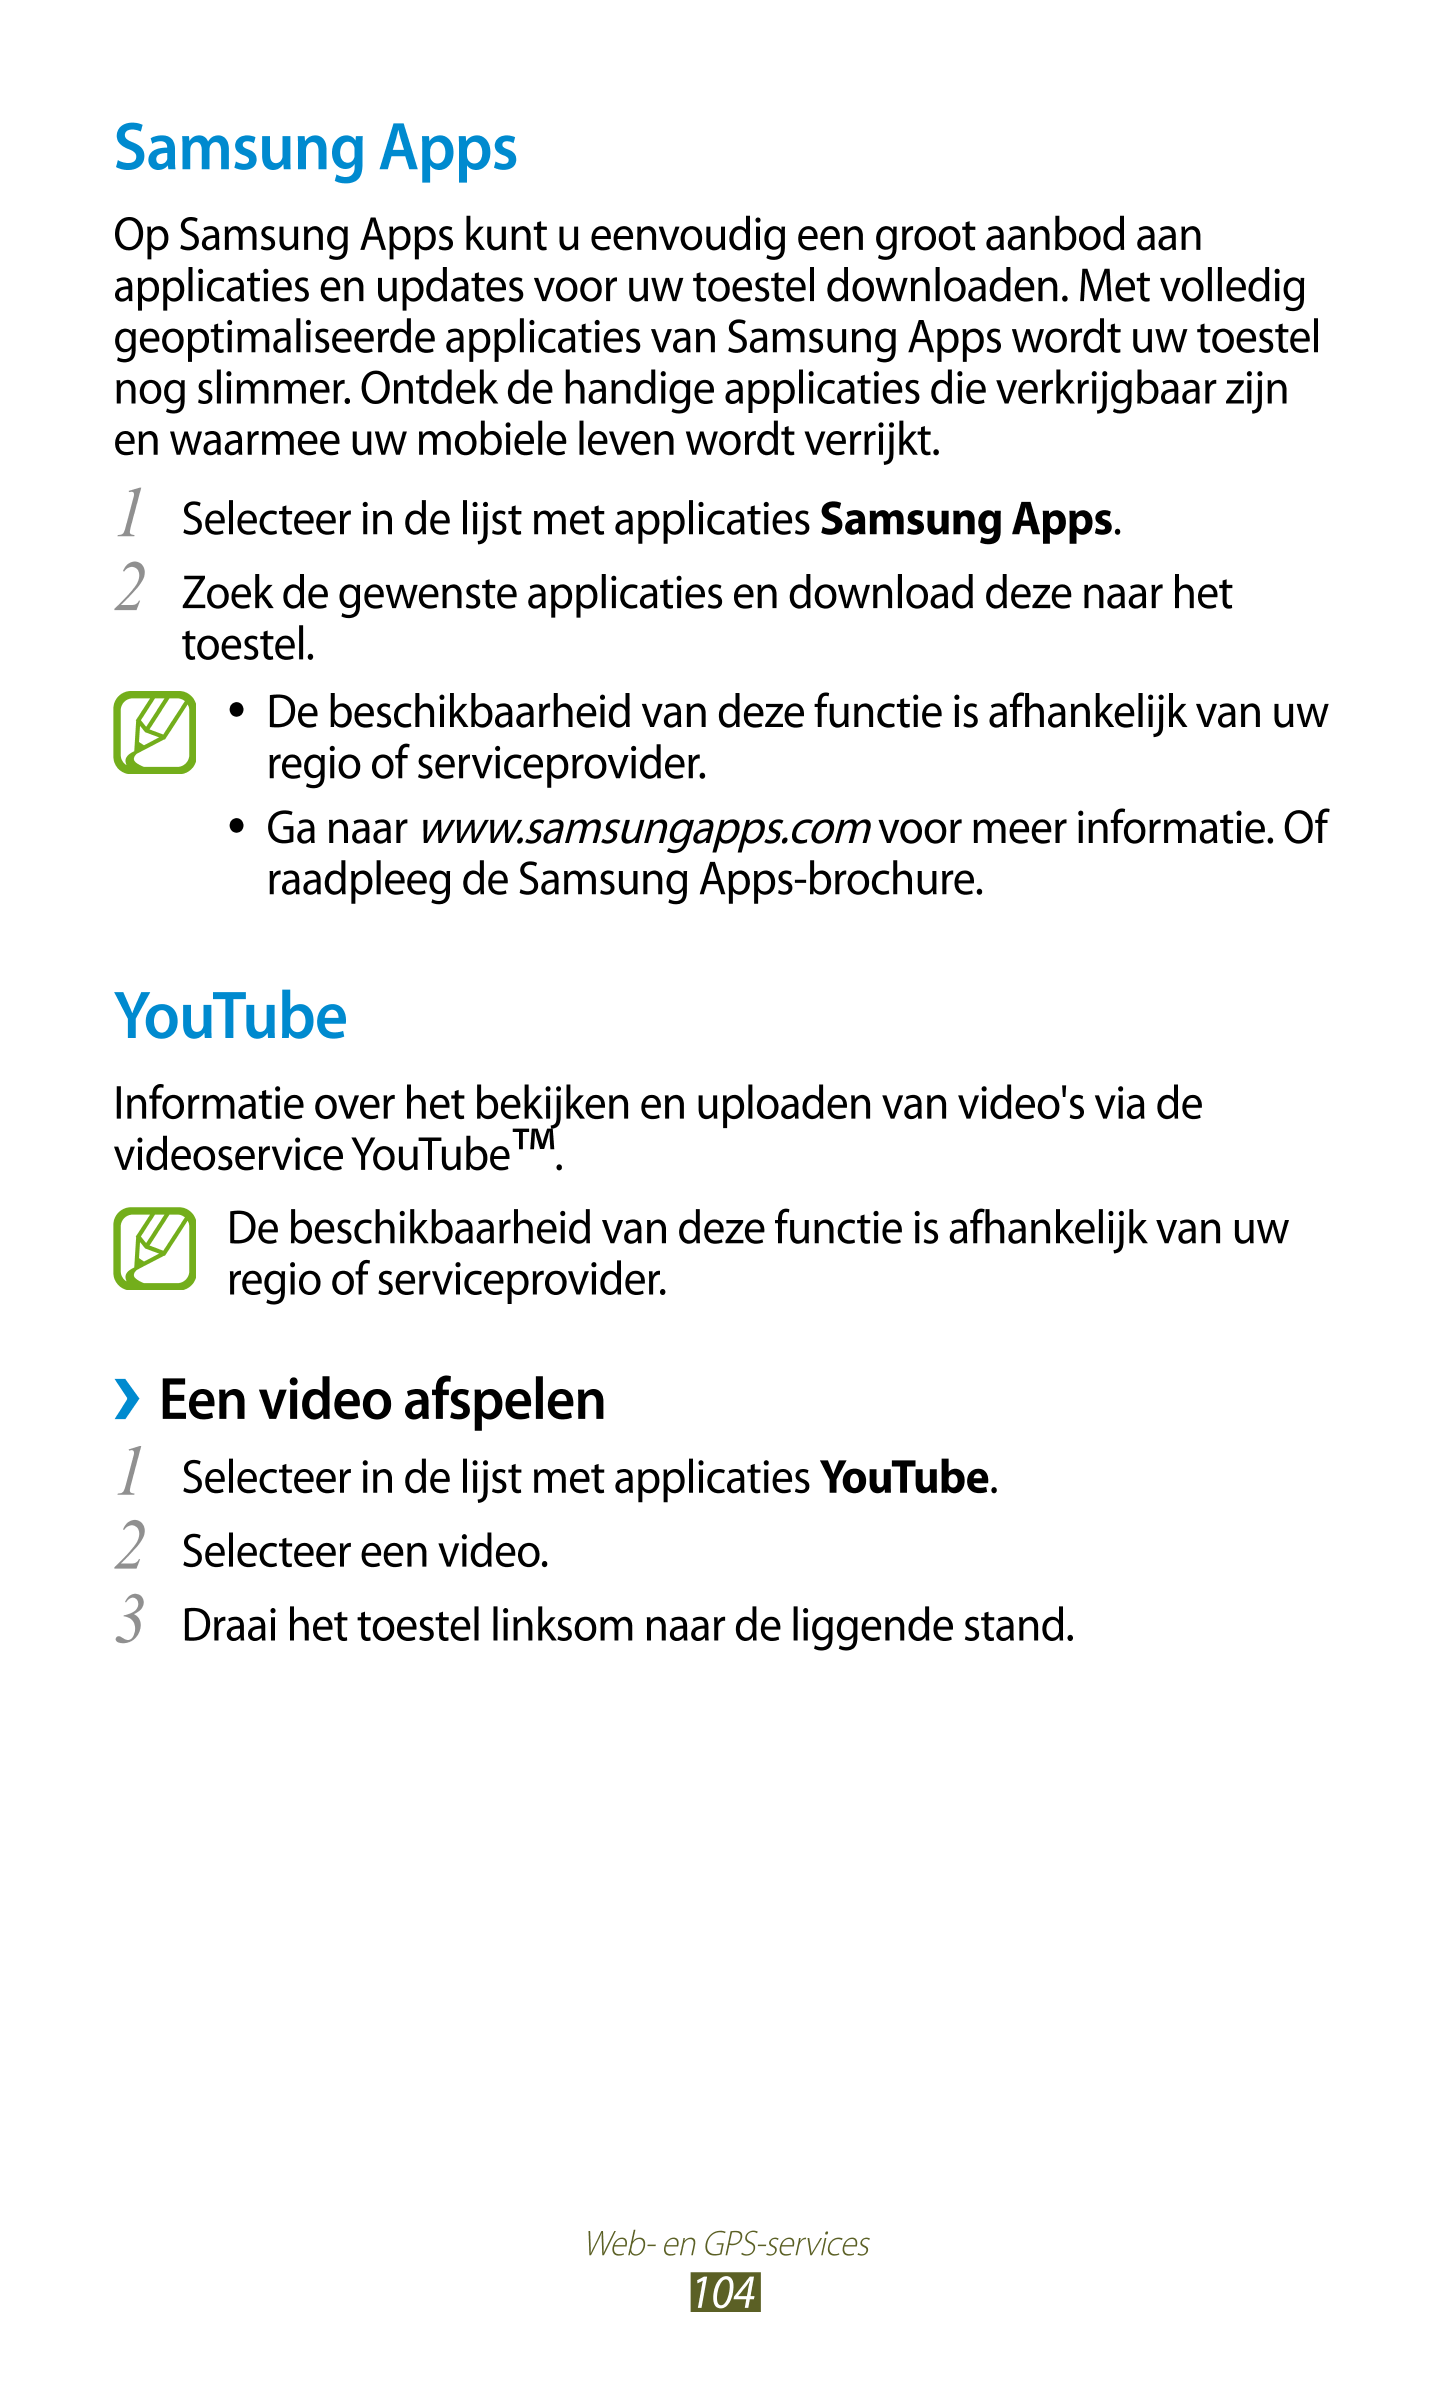 Samsung Apps
Op Samsung Apps kunt u eenvoudig een groot aanbod aan 
applicaties en updates voor uw toestel downloaden. Met volle